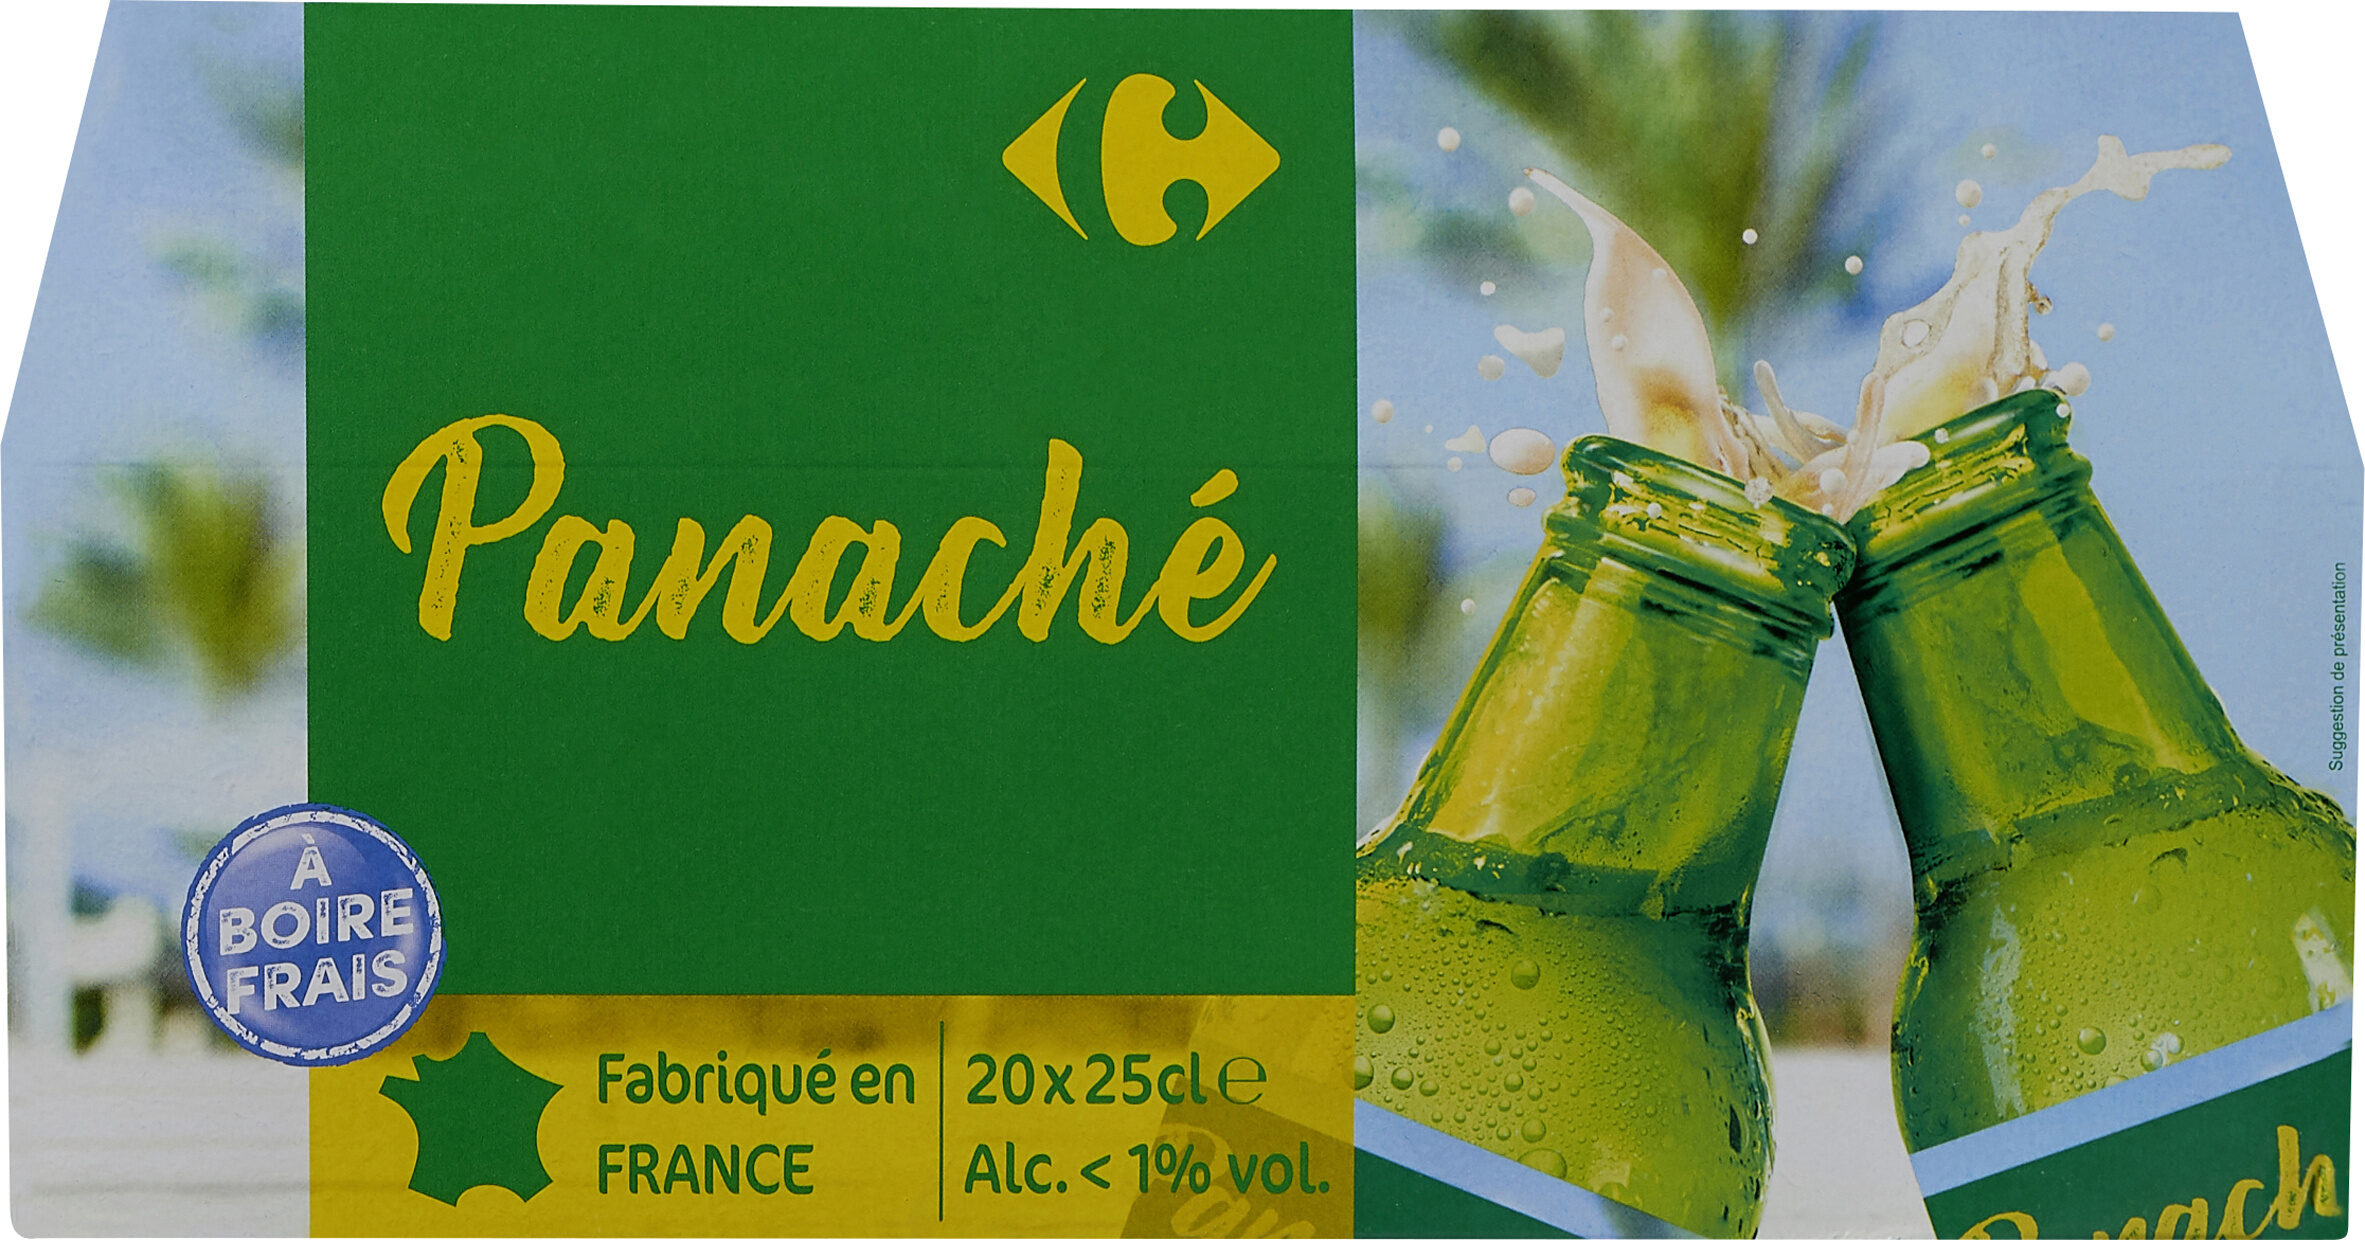 Panaché - Product - fr